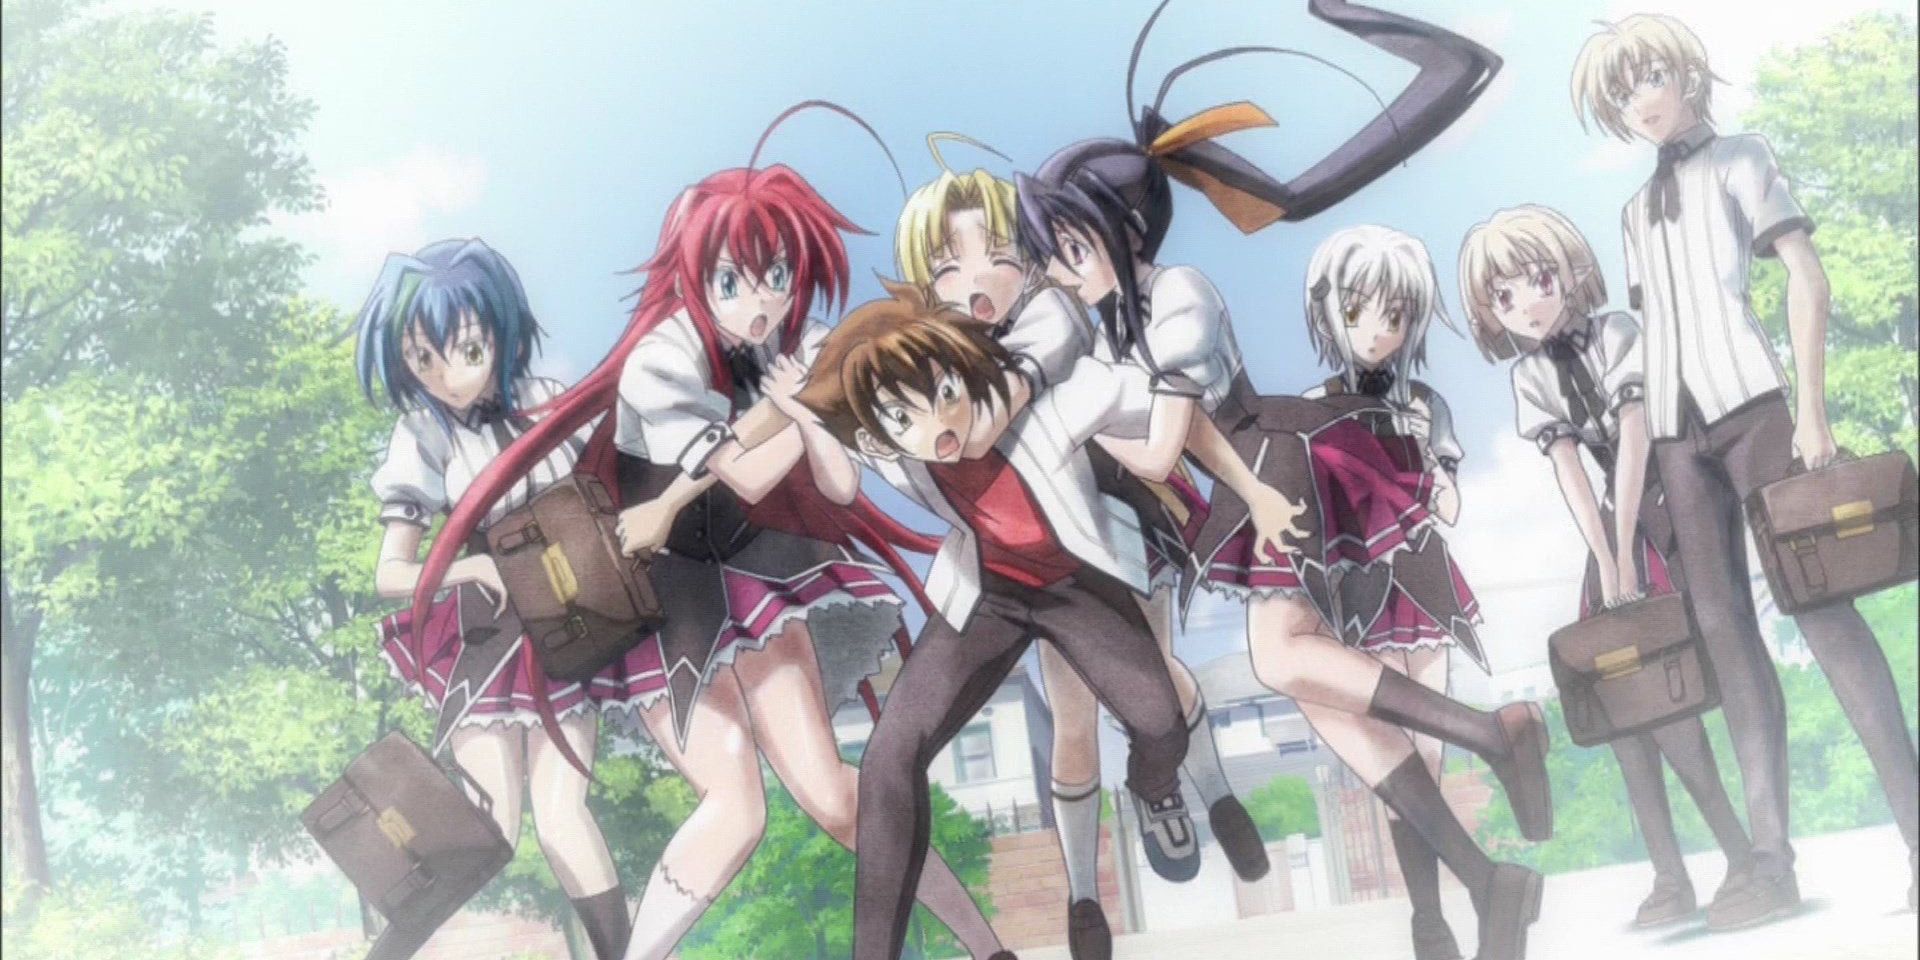 anime high school dxd new